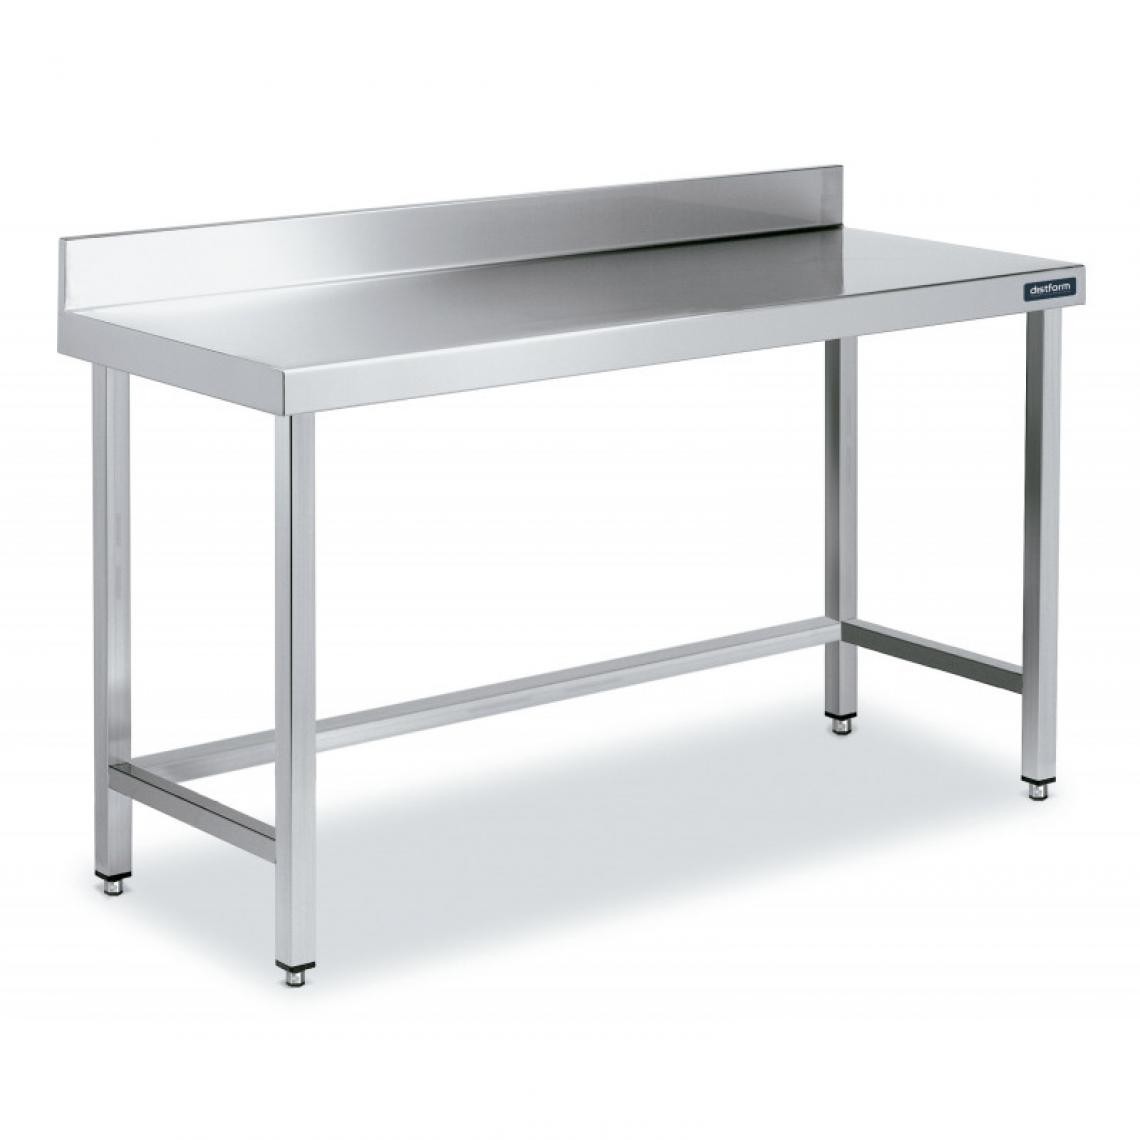 DISTFORM - Table Inox de Travail avec Dosseret Gamme 800 - Distform - Acier inoxydable2600x800 - Tables à manger